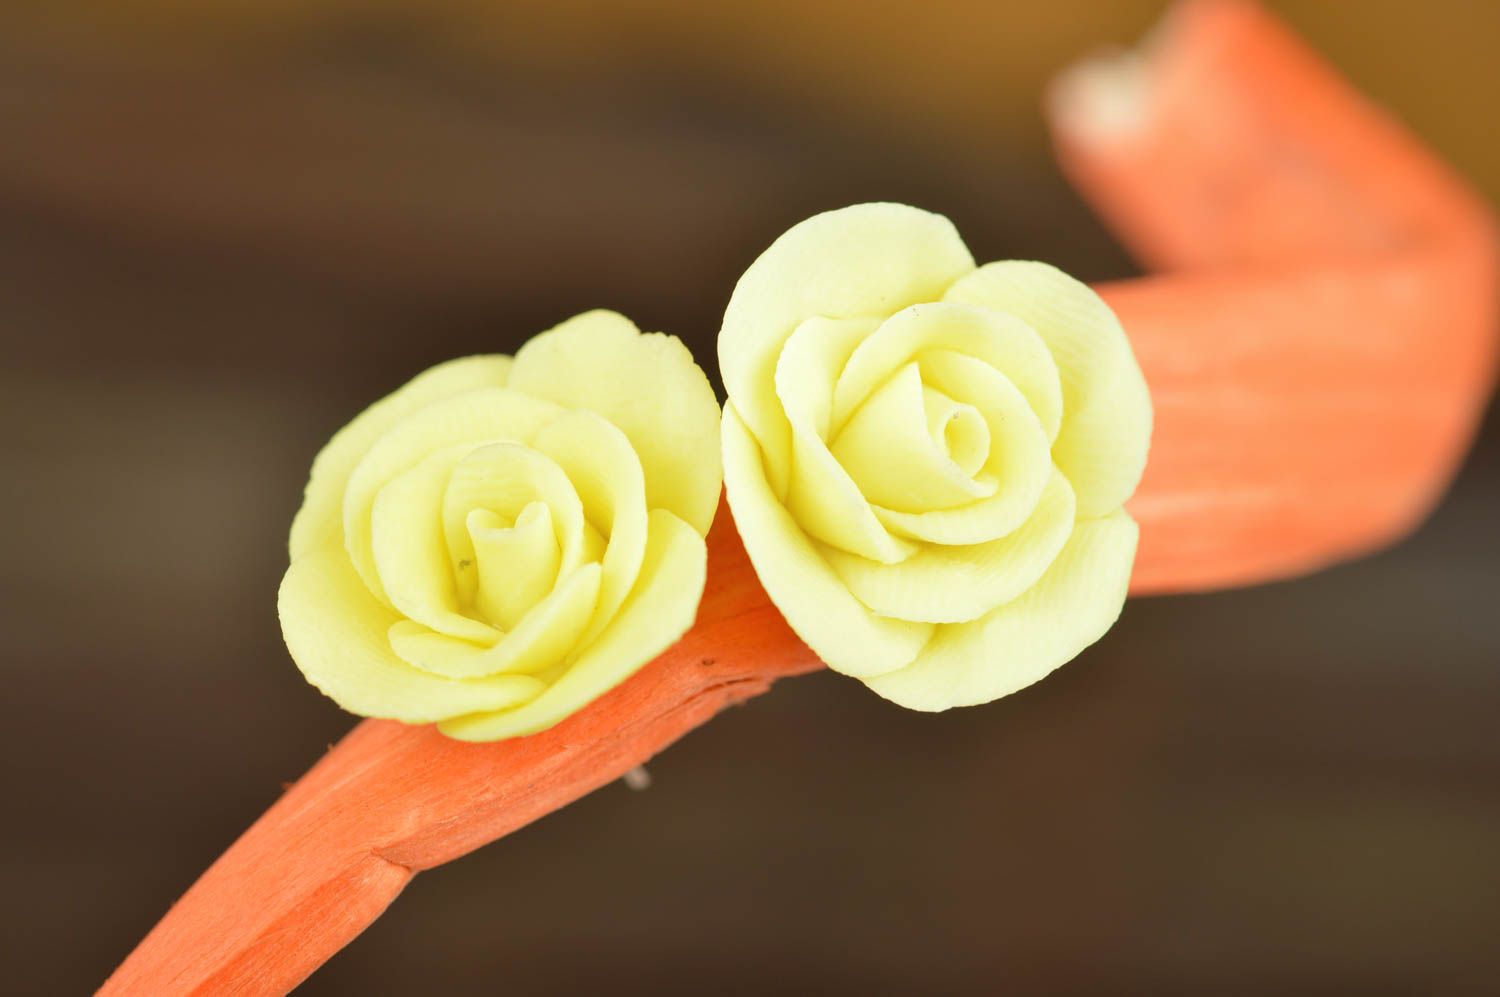 Авторское украшение из полимерной глины серьги гвоздики желтая роза хенд мейд фото 1